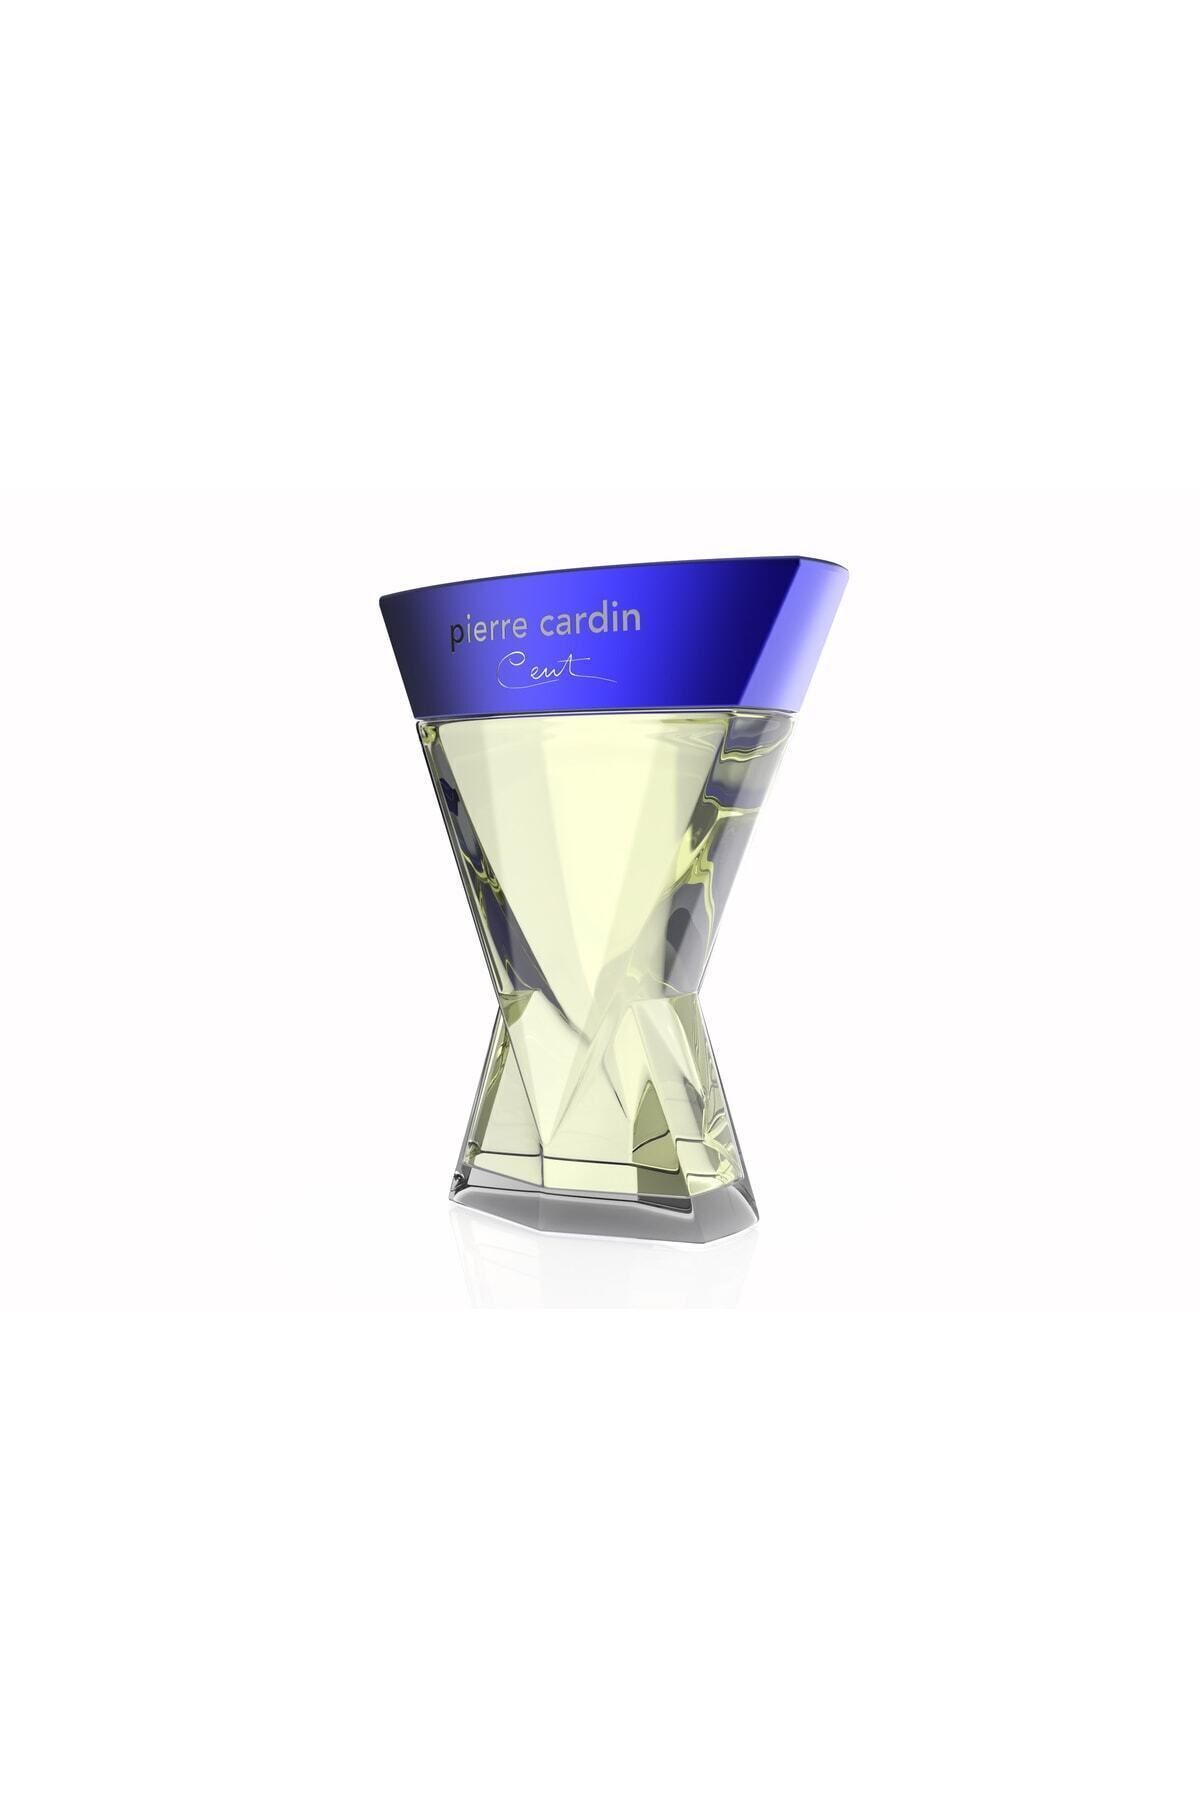 Pierre Cardin Mandarin, Bergamot and Pepper Top Notes Unique Unisex Perfume 90ml